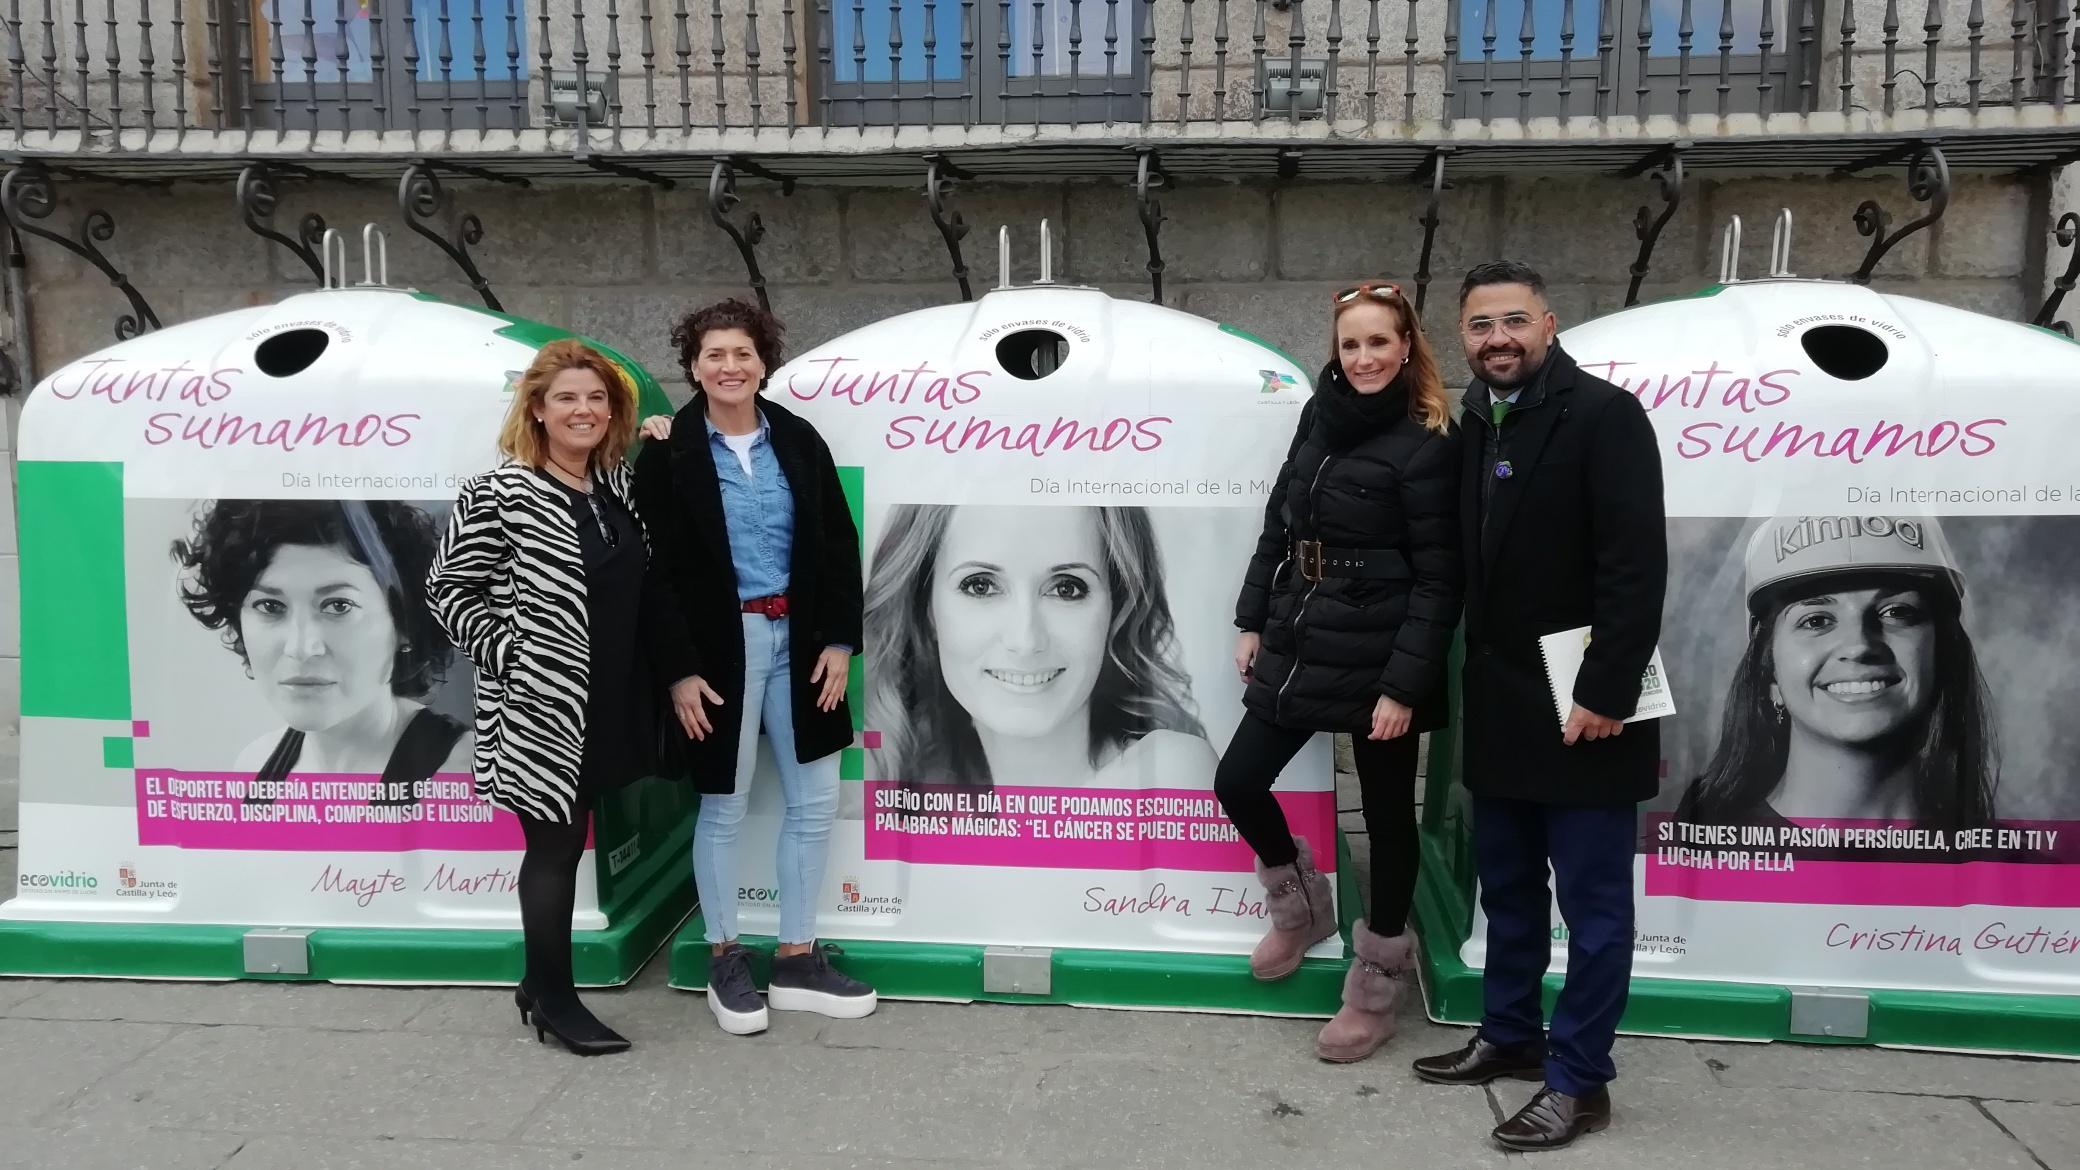 Campaña Juntas Sumamos en Castilla y León